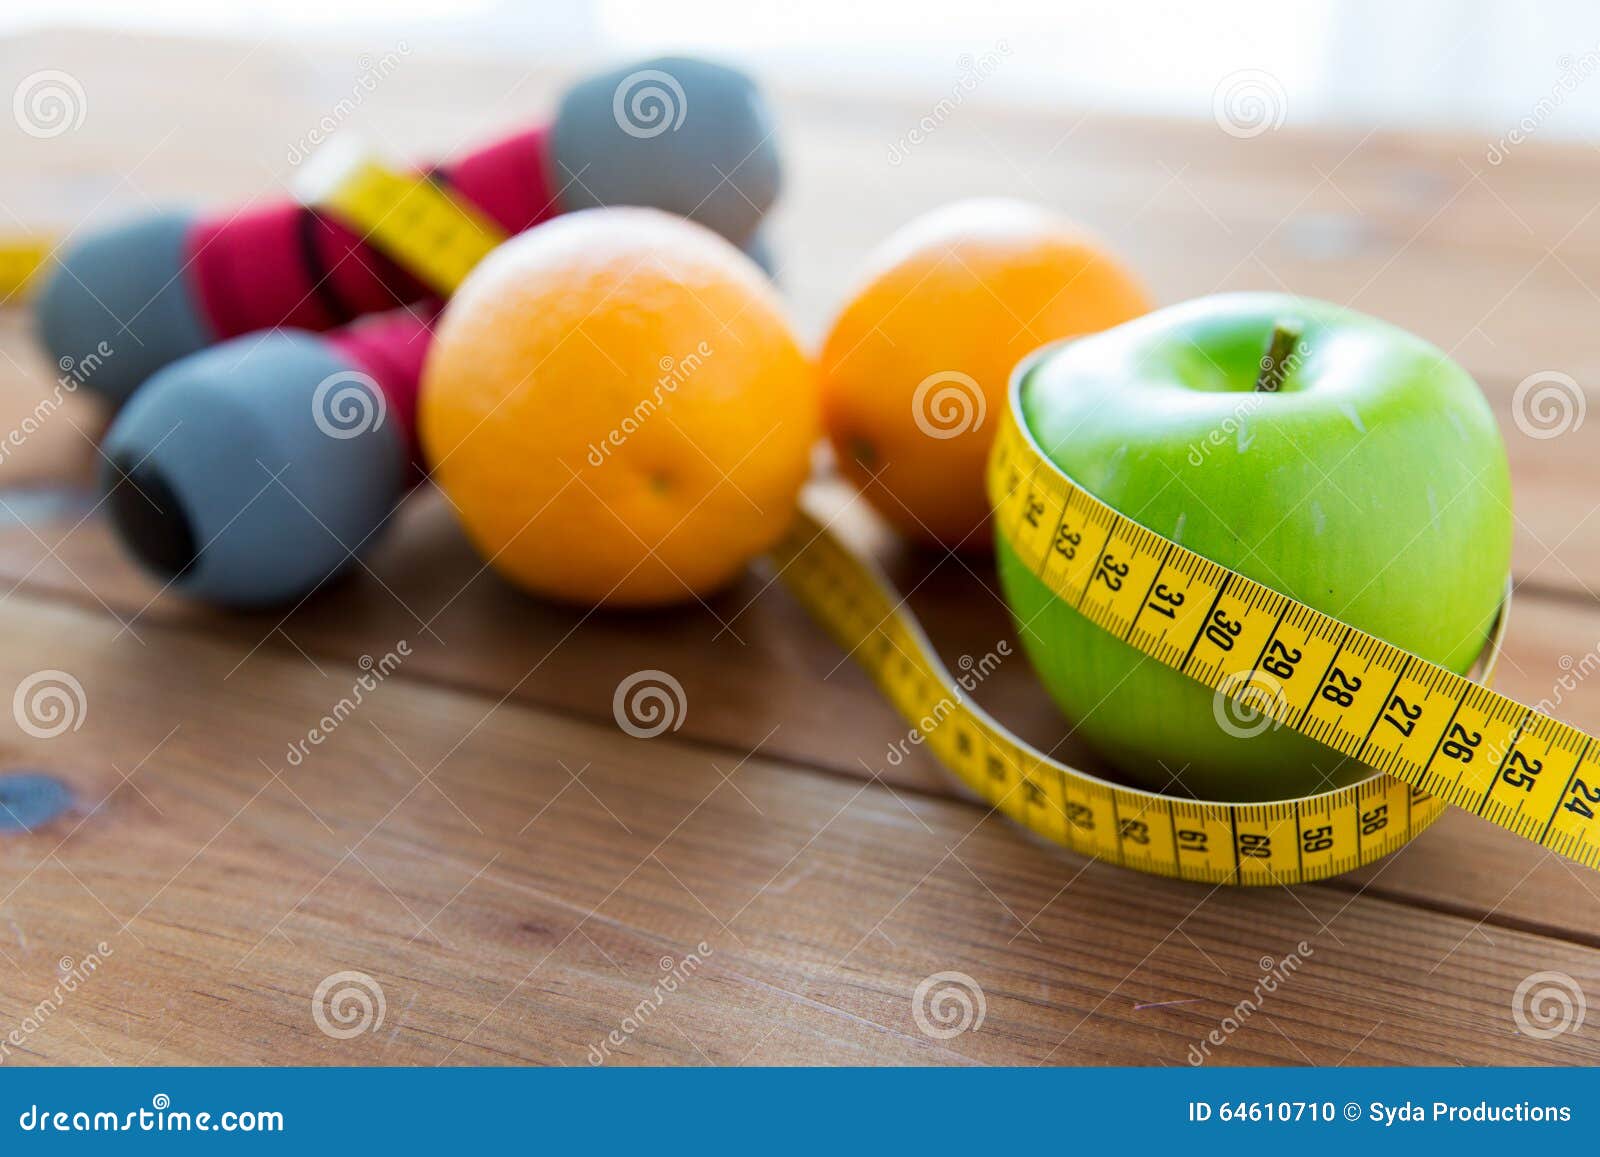 关闭哑铃、果子和测量的磁带. 体育、健身、饮食和对象概念-接近哑铃和绿色苹果用测量包裹的桔子磁带在木桌上